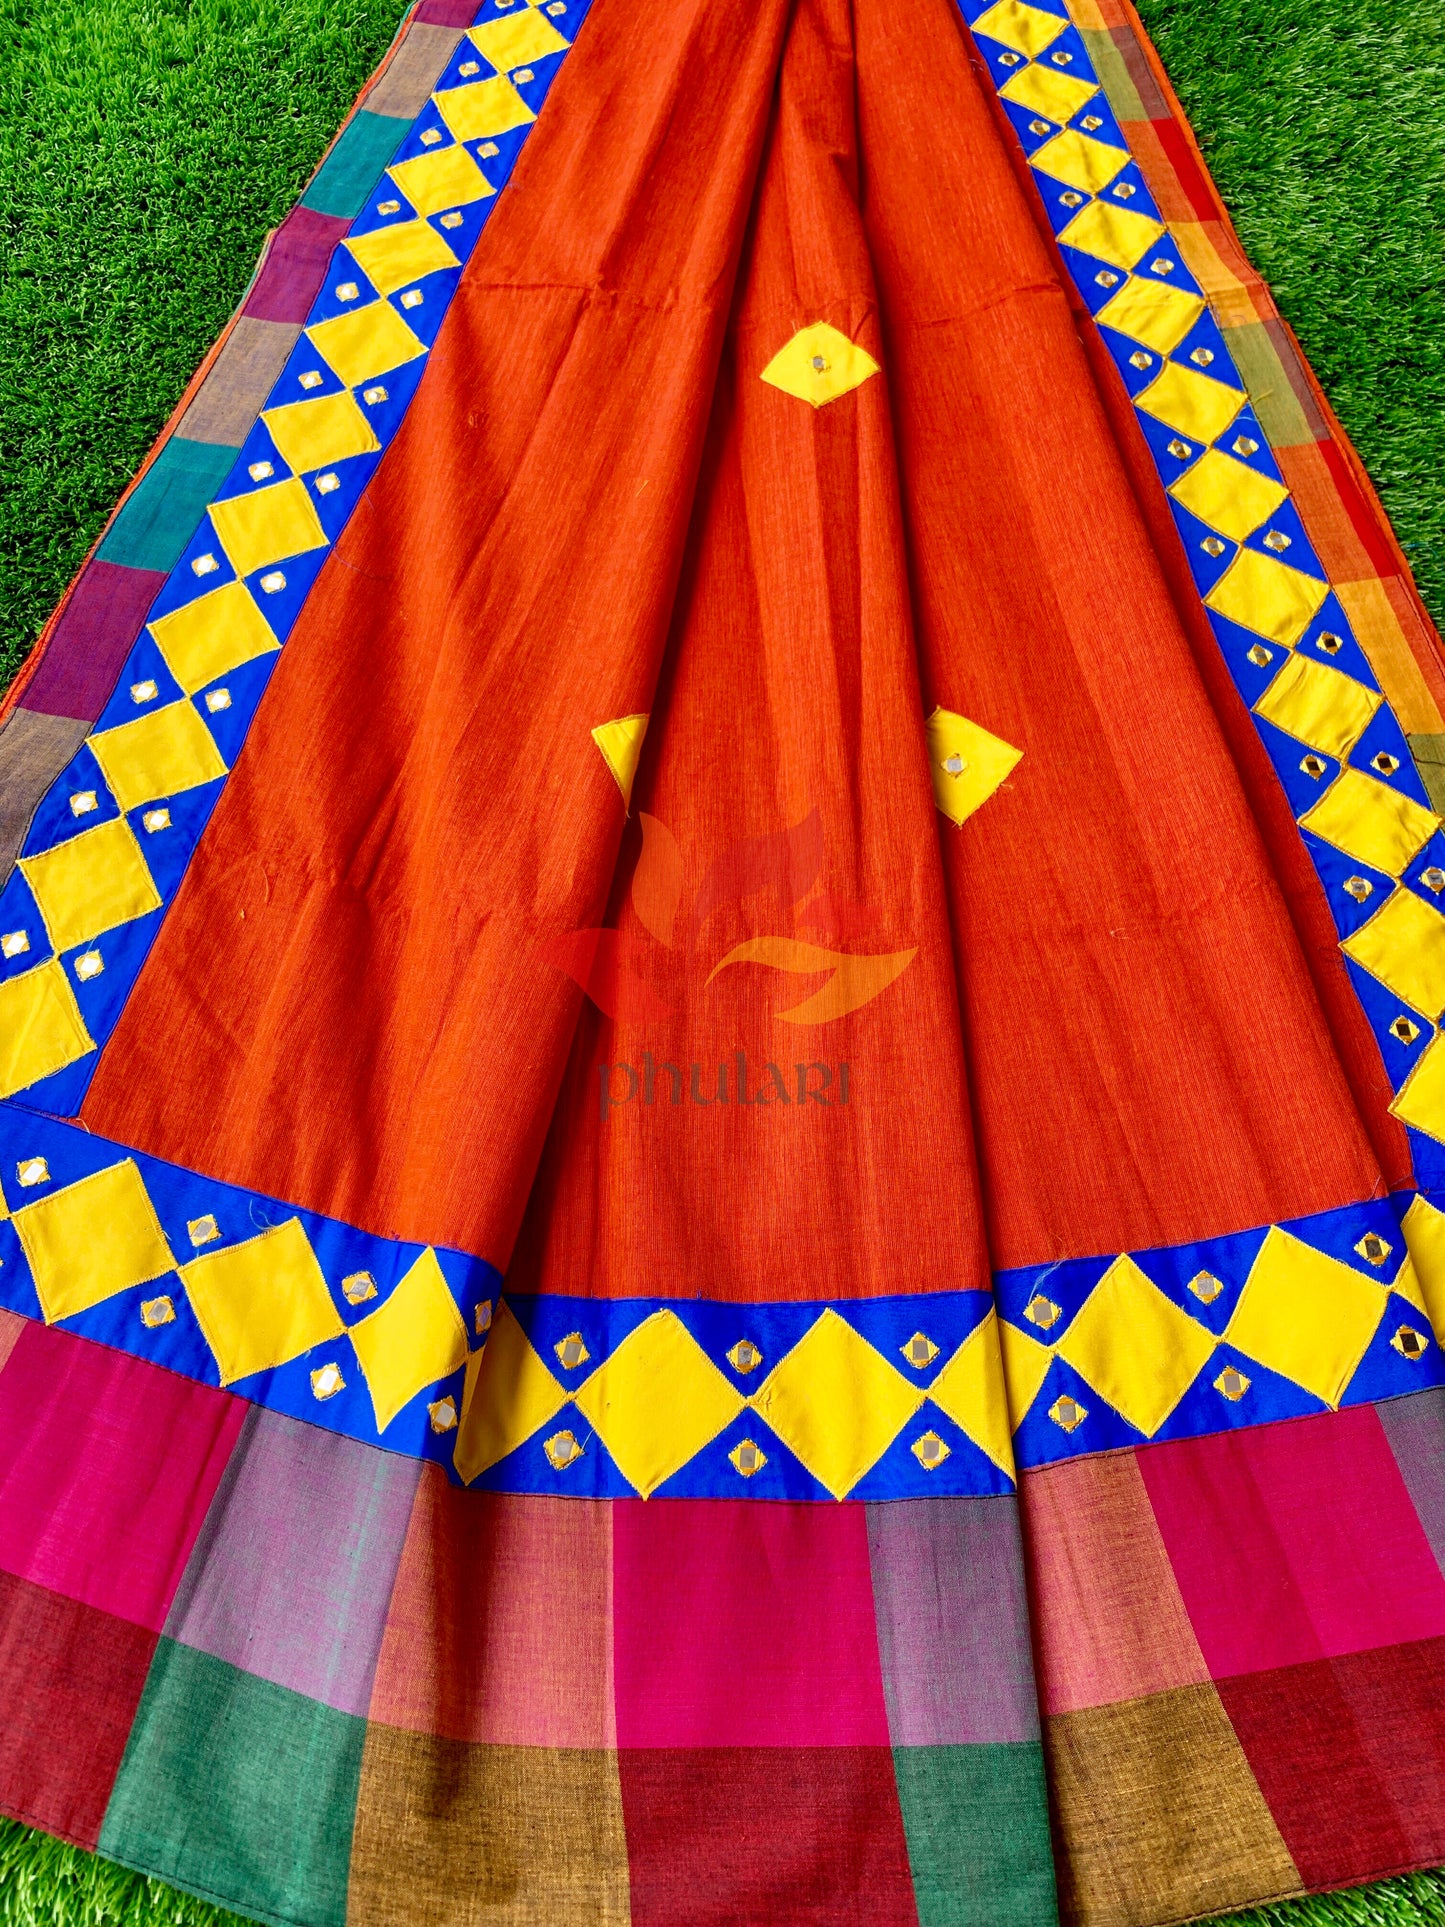 Khadhi Saree appliqué patch work foil mirror - Orange - Phulari 